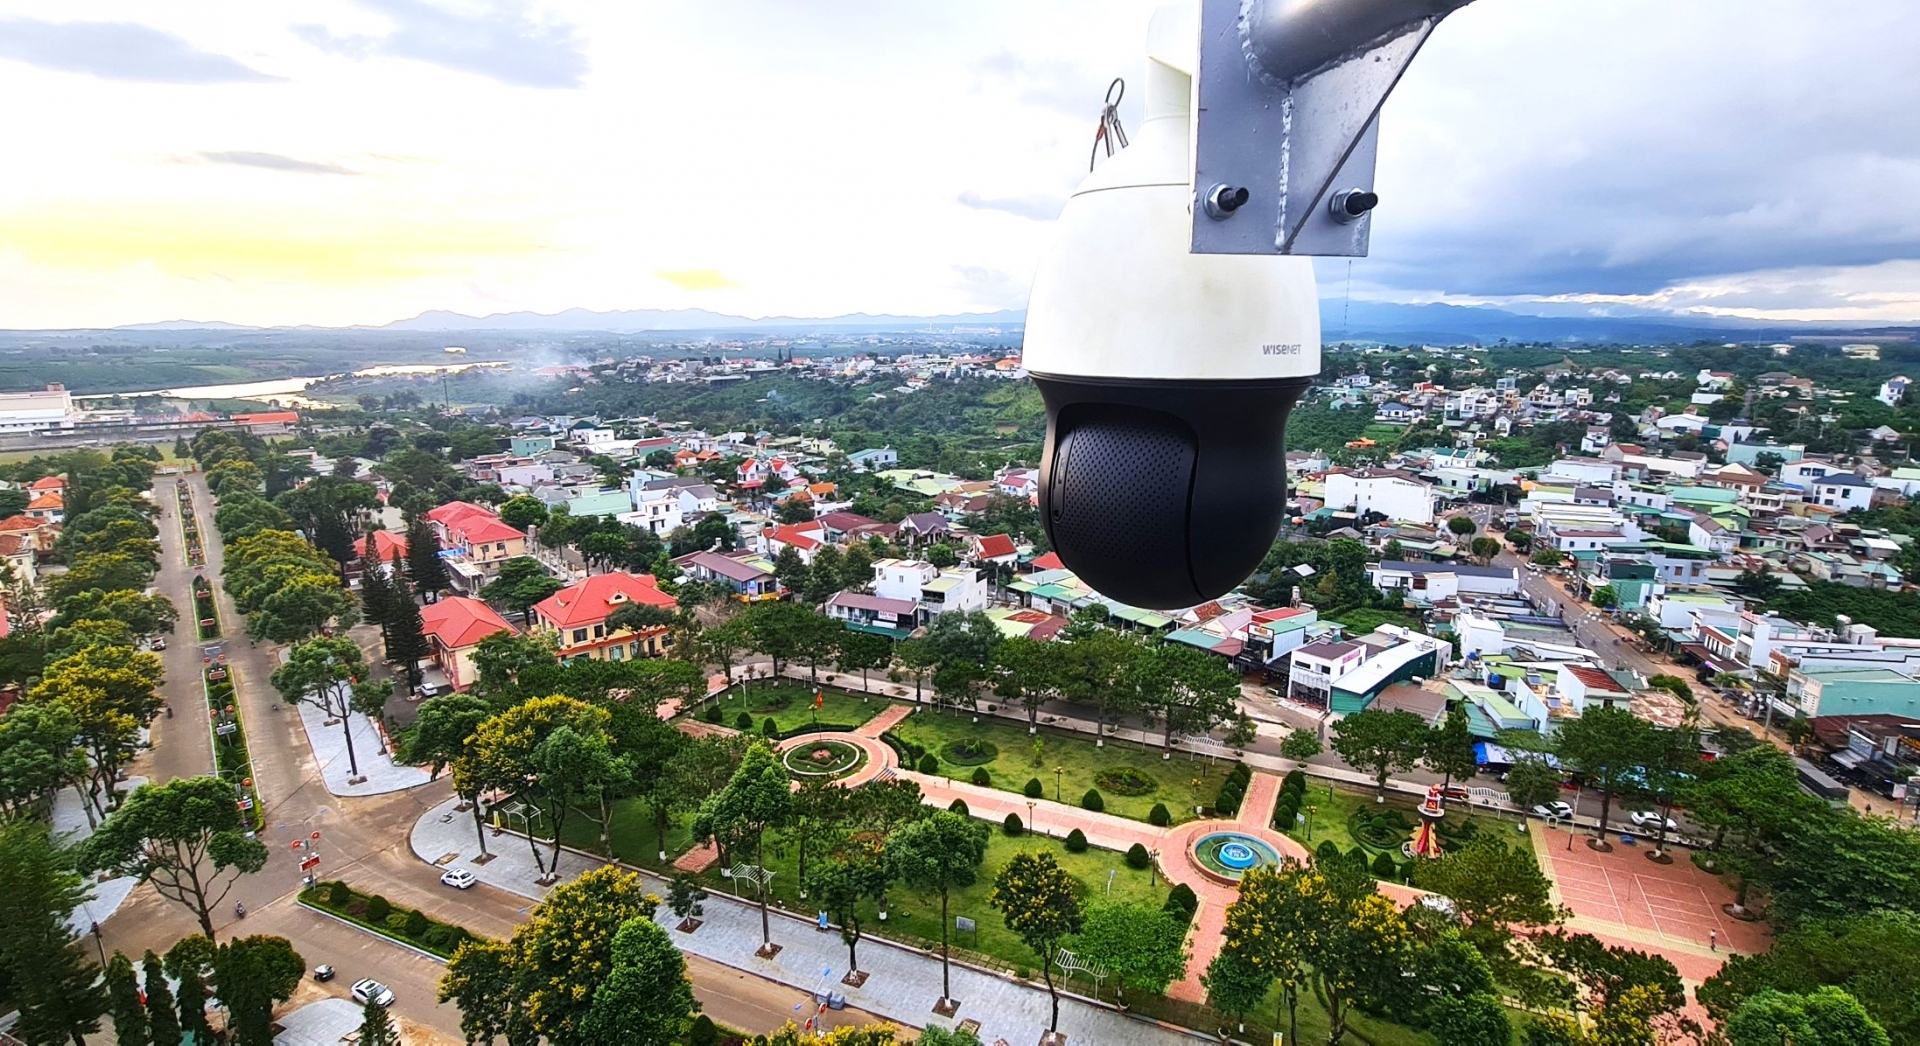 Camera phục vụ Trung tâm Điều hành thông minh huyện Bảo Lâm 